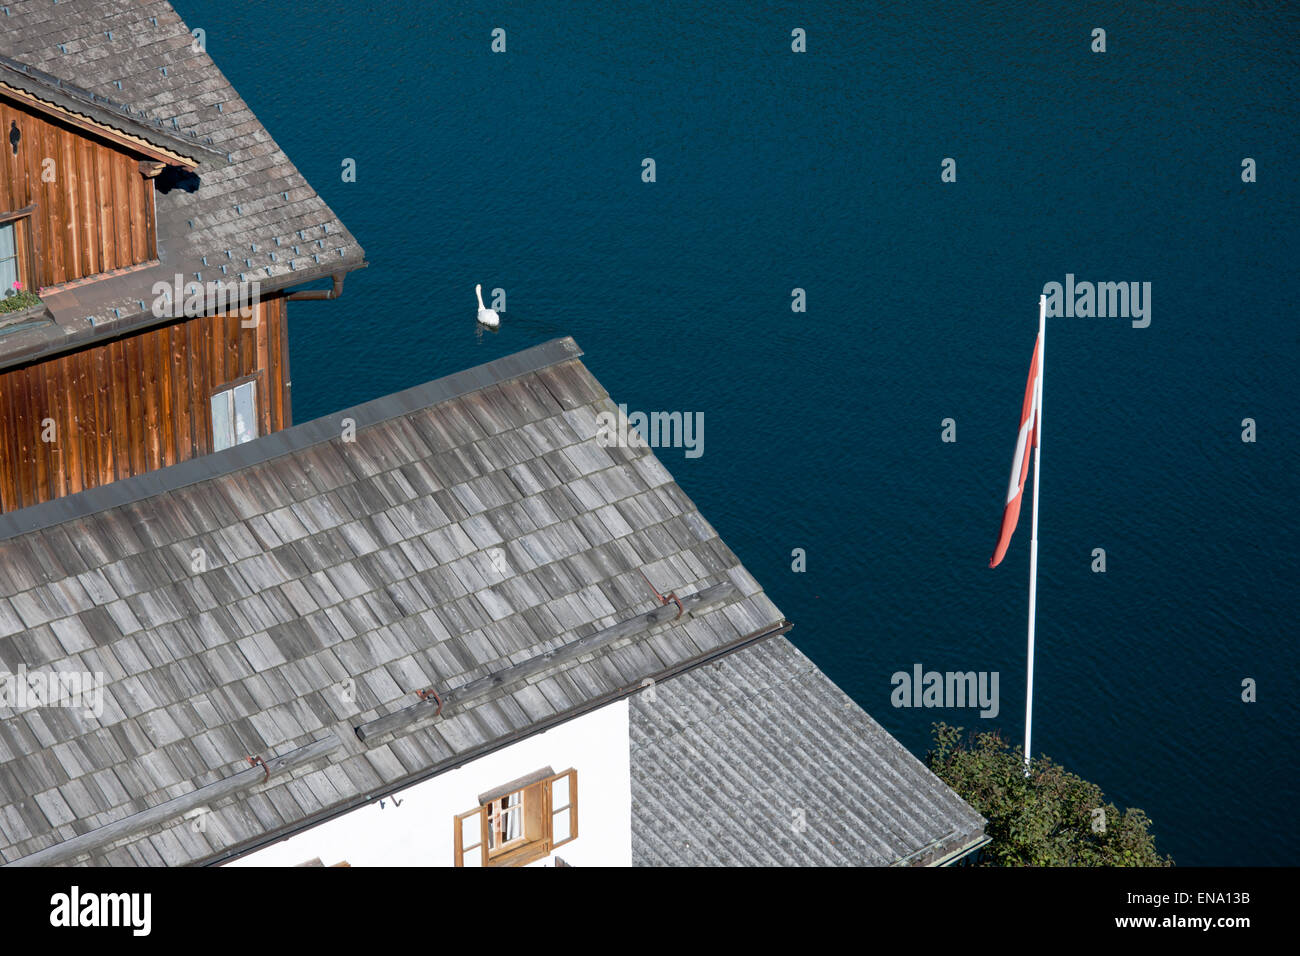 Hallstatt Dächer von oben gesehen mit Schwan und österreichischer Fahne, Salzkammergut, Austria Stock Photo